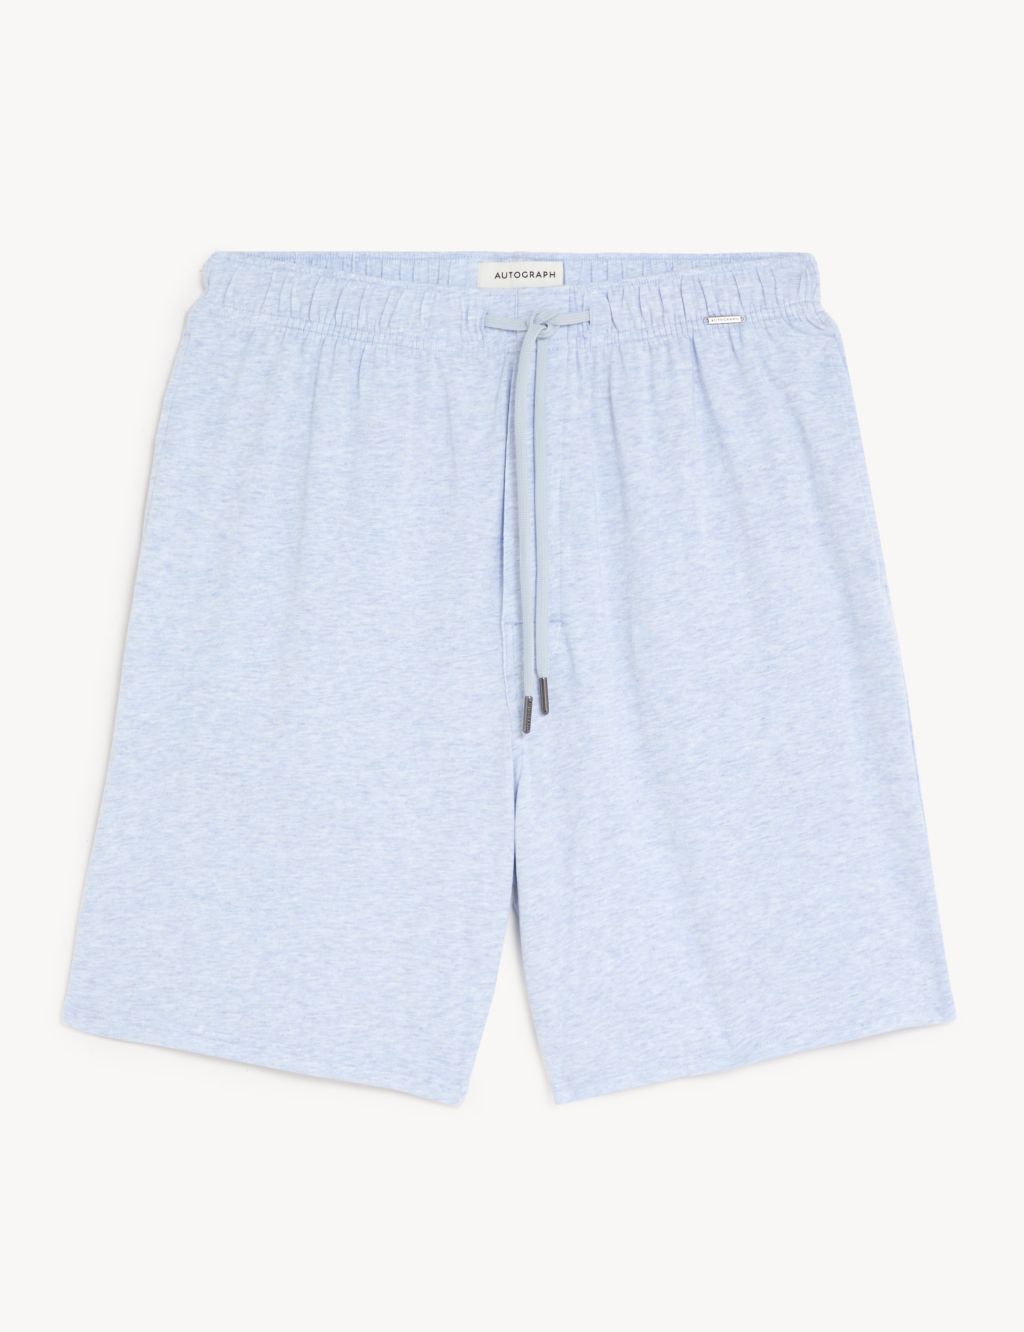 Cotton Blend Pyjama Shorts image 2